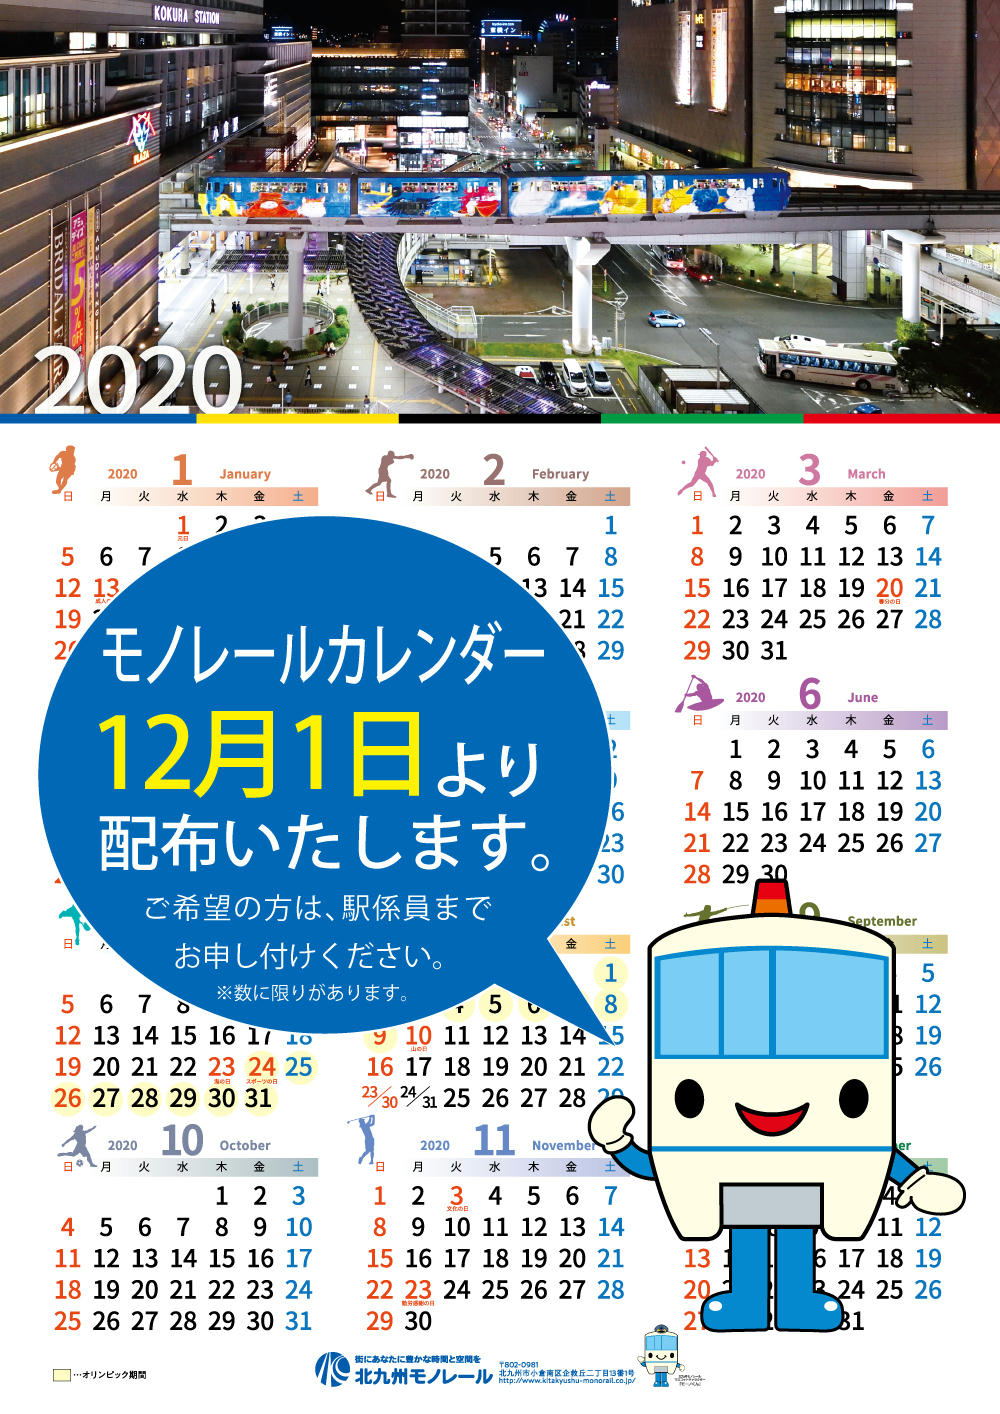 北九州高速鉄道 モノレールカレンダー 配布 19年12月1日 鉄道コム